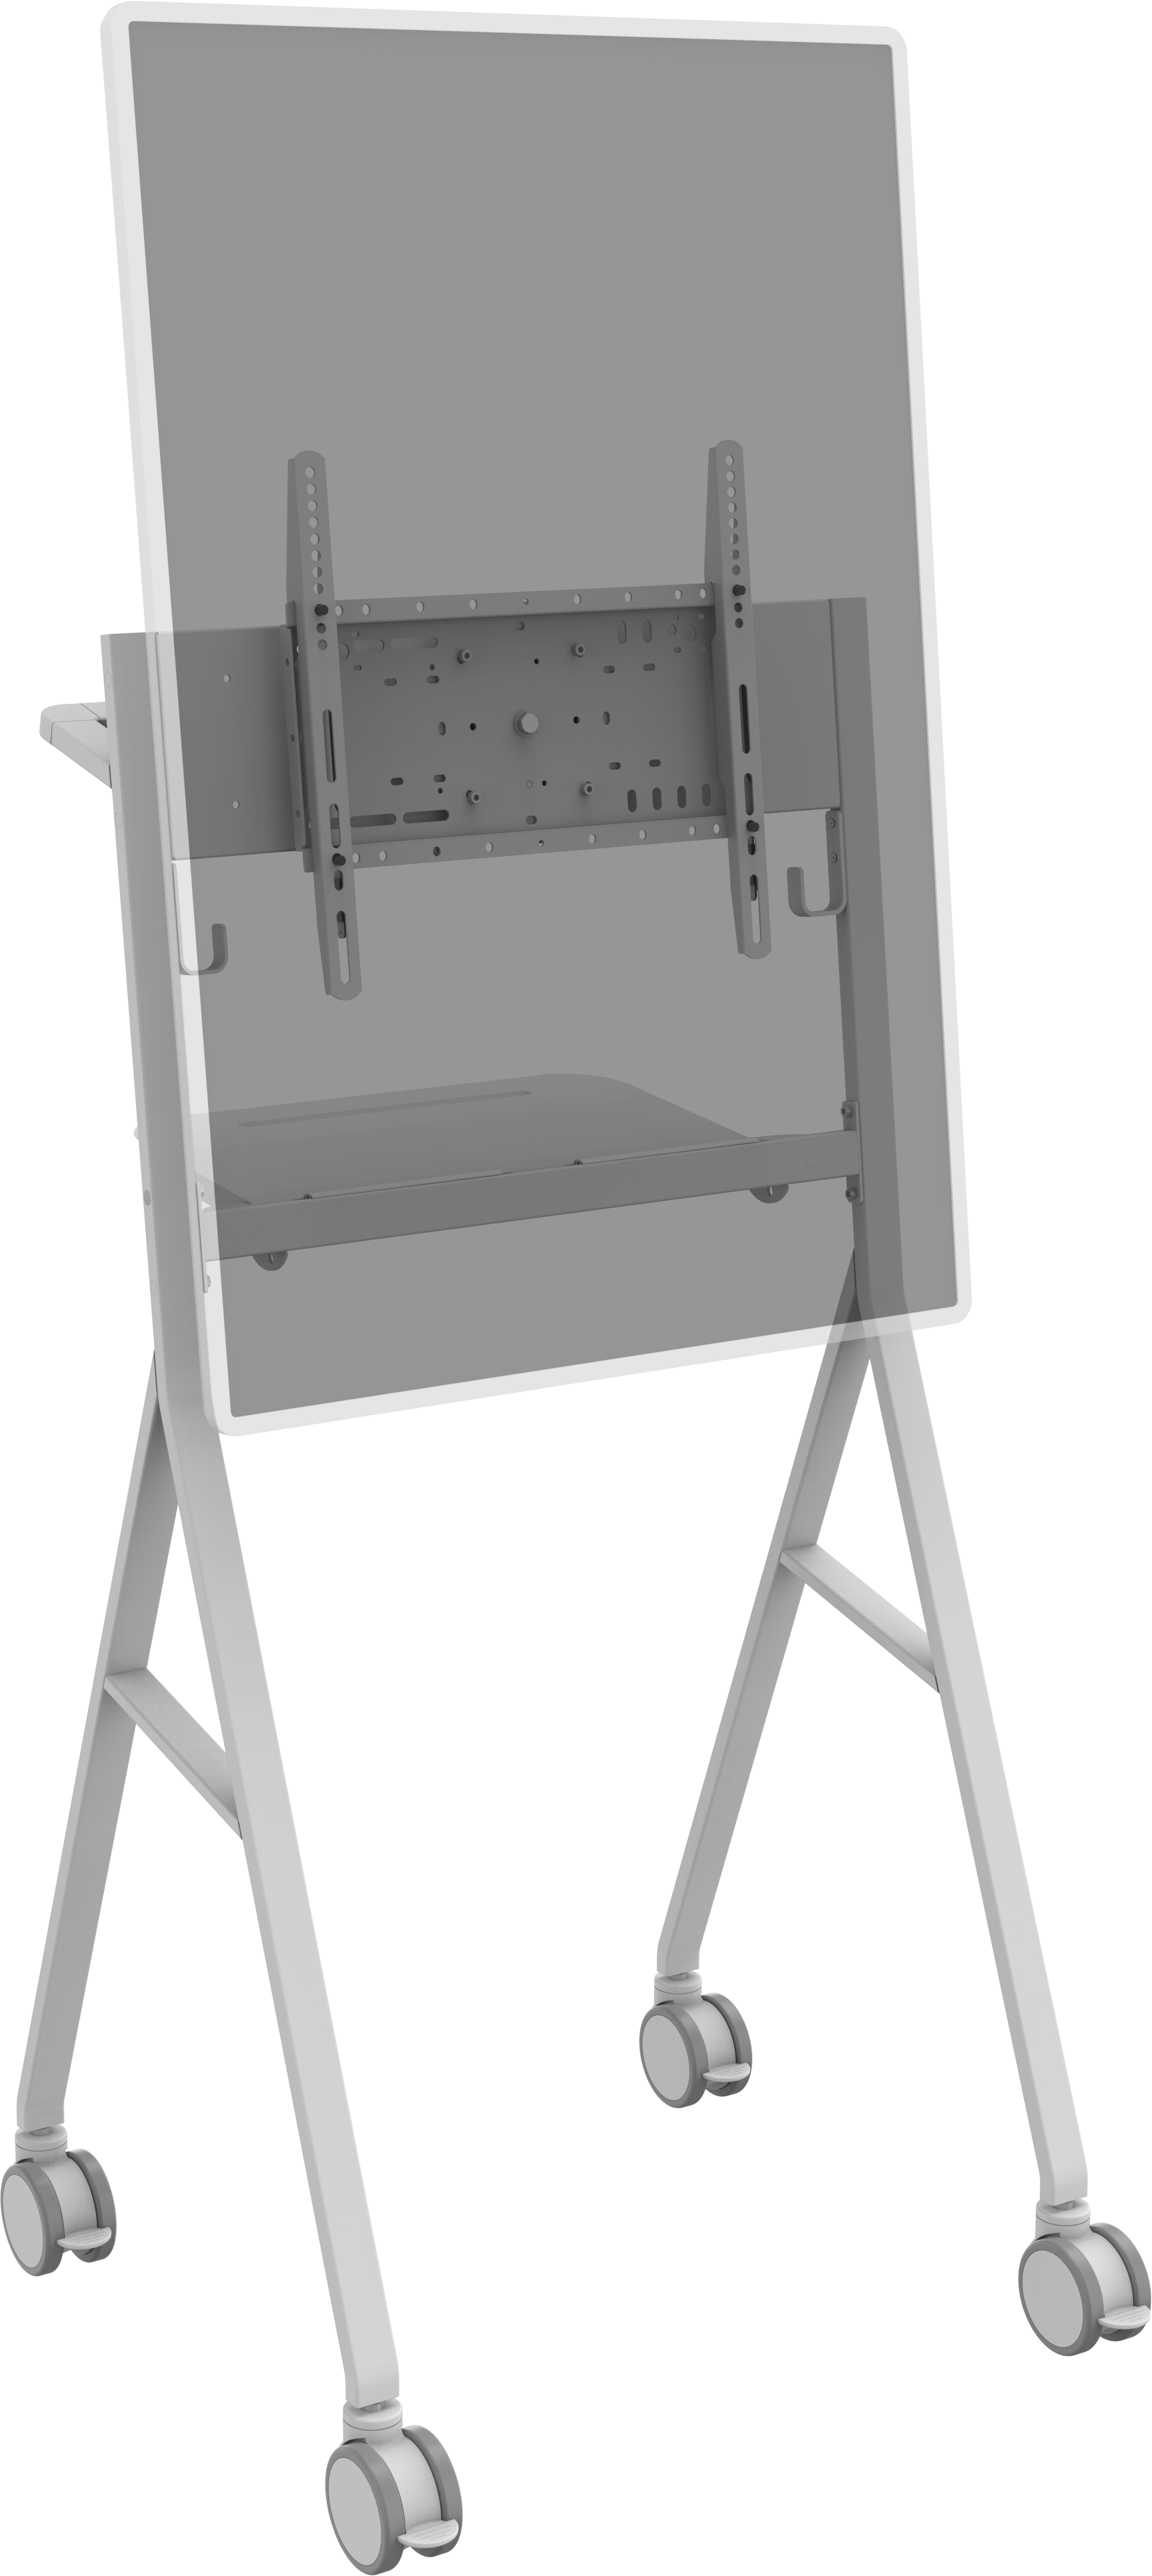 An image showing Vloerstandaard in flipchart-stijl voor vergaderruimten